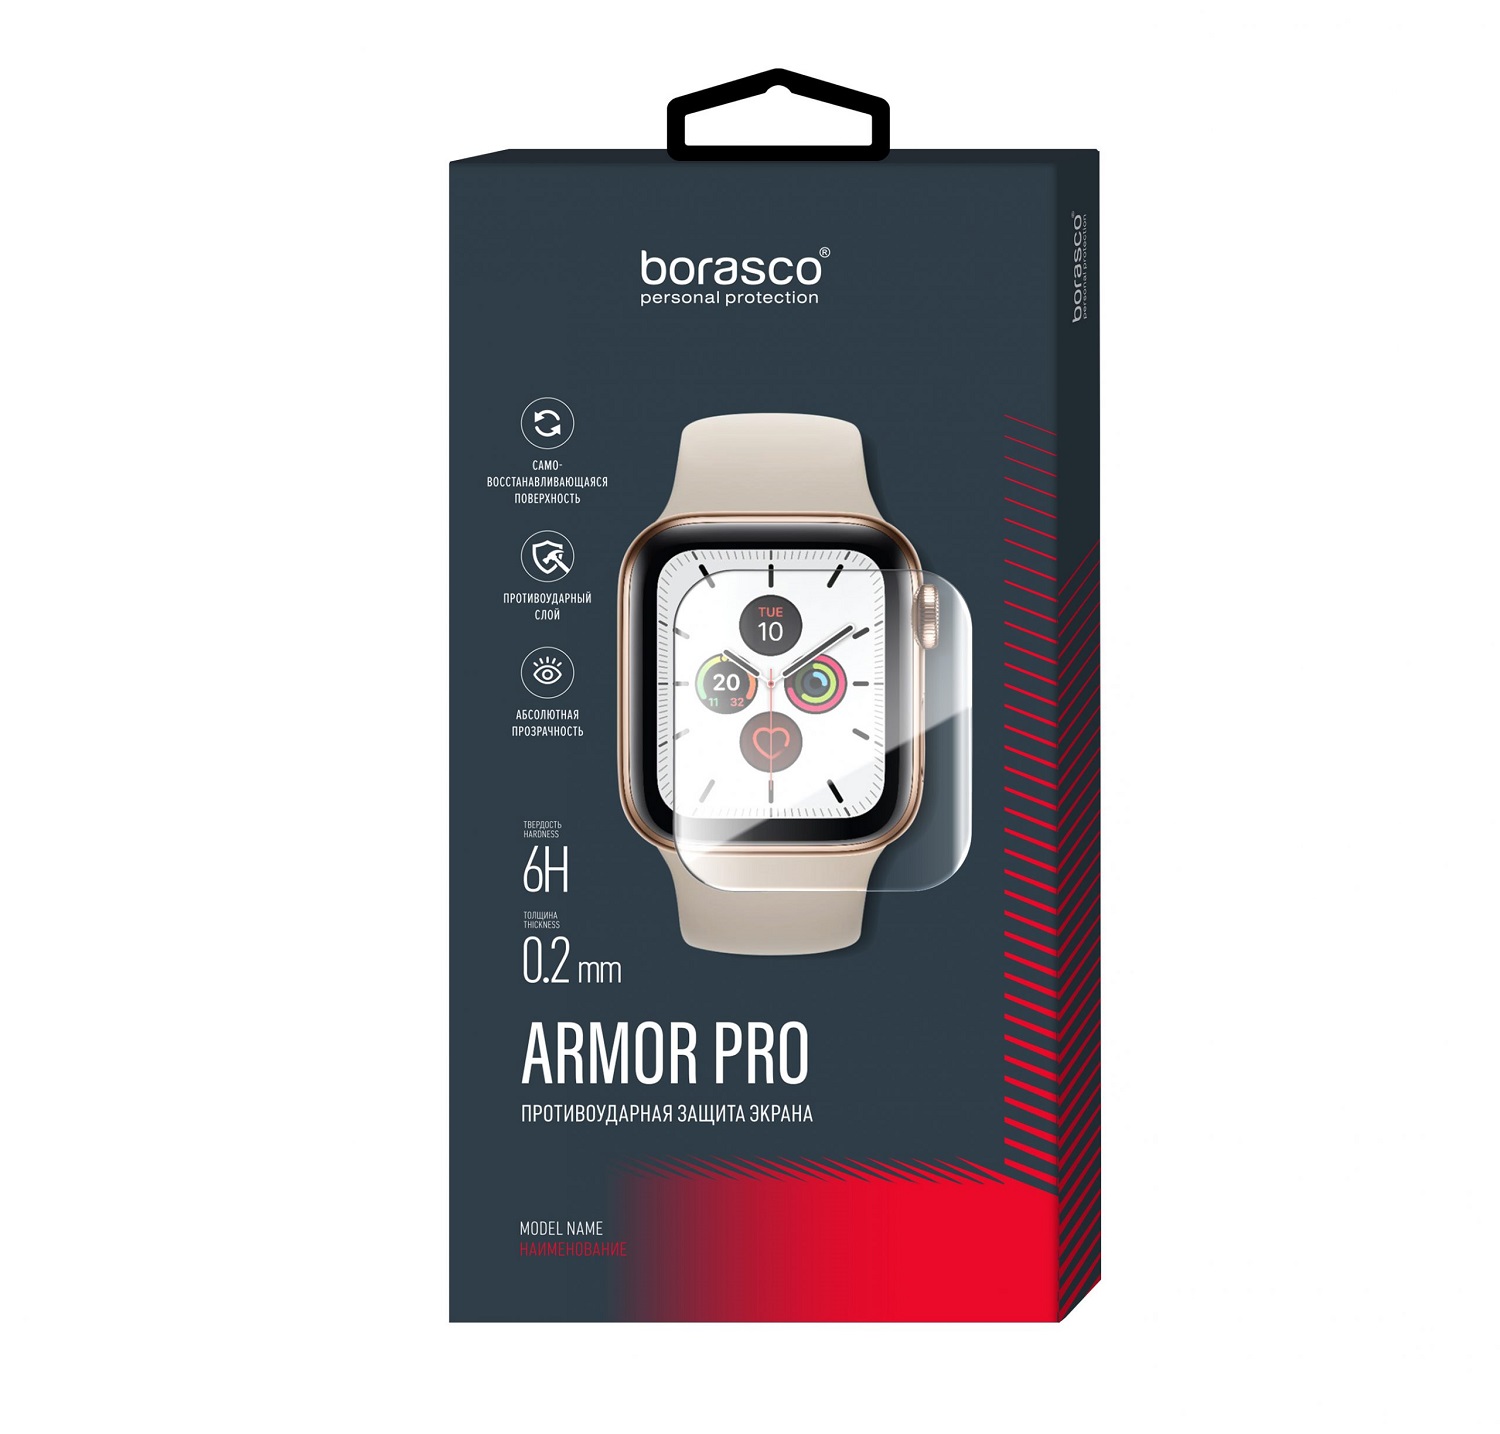 Защита экрана BoraSCO Armor Pro для Xiaomi Mi band 4/5 защита экрана borasco armor pro для honor band 4 5